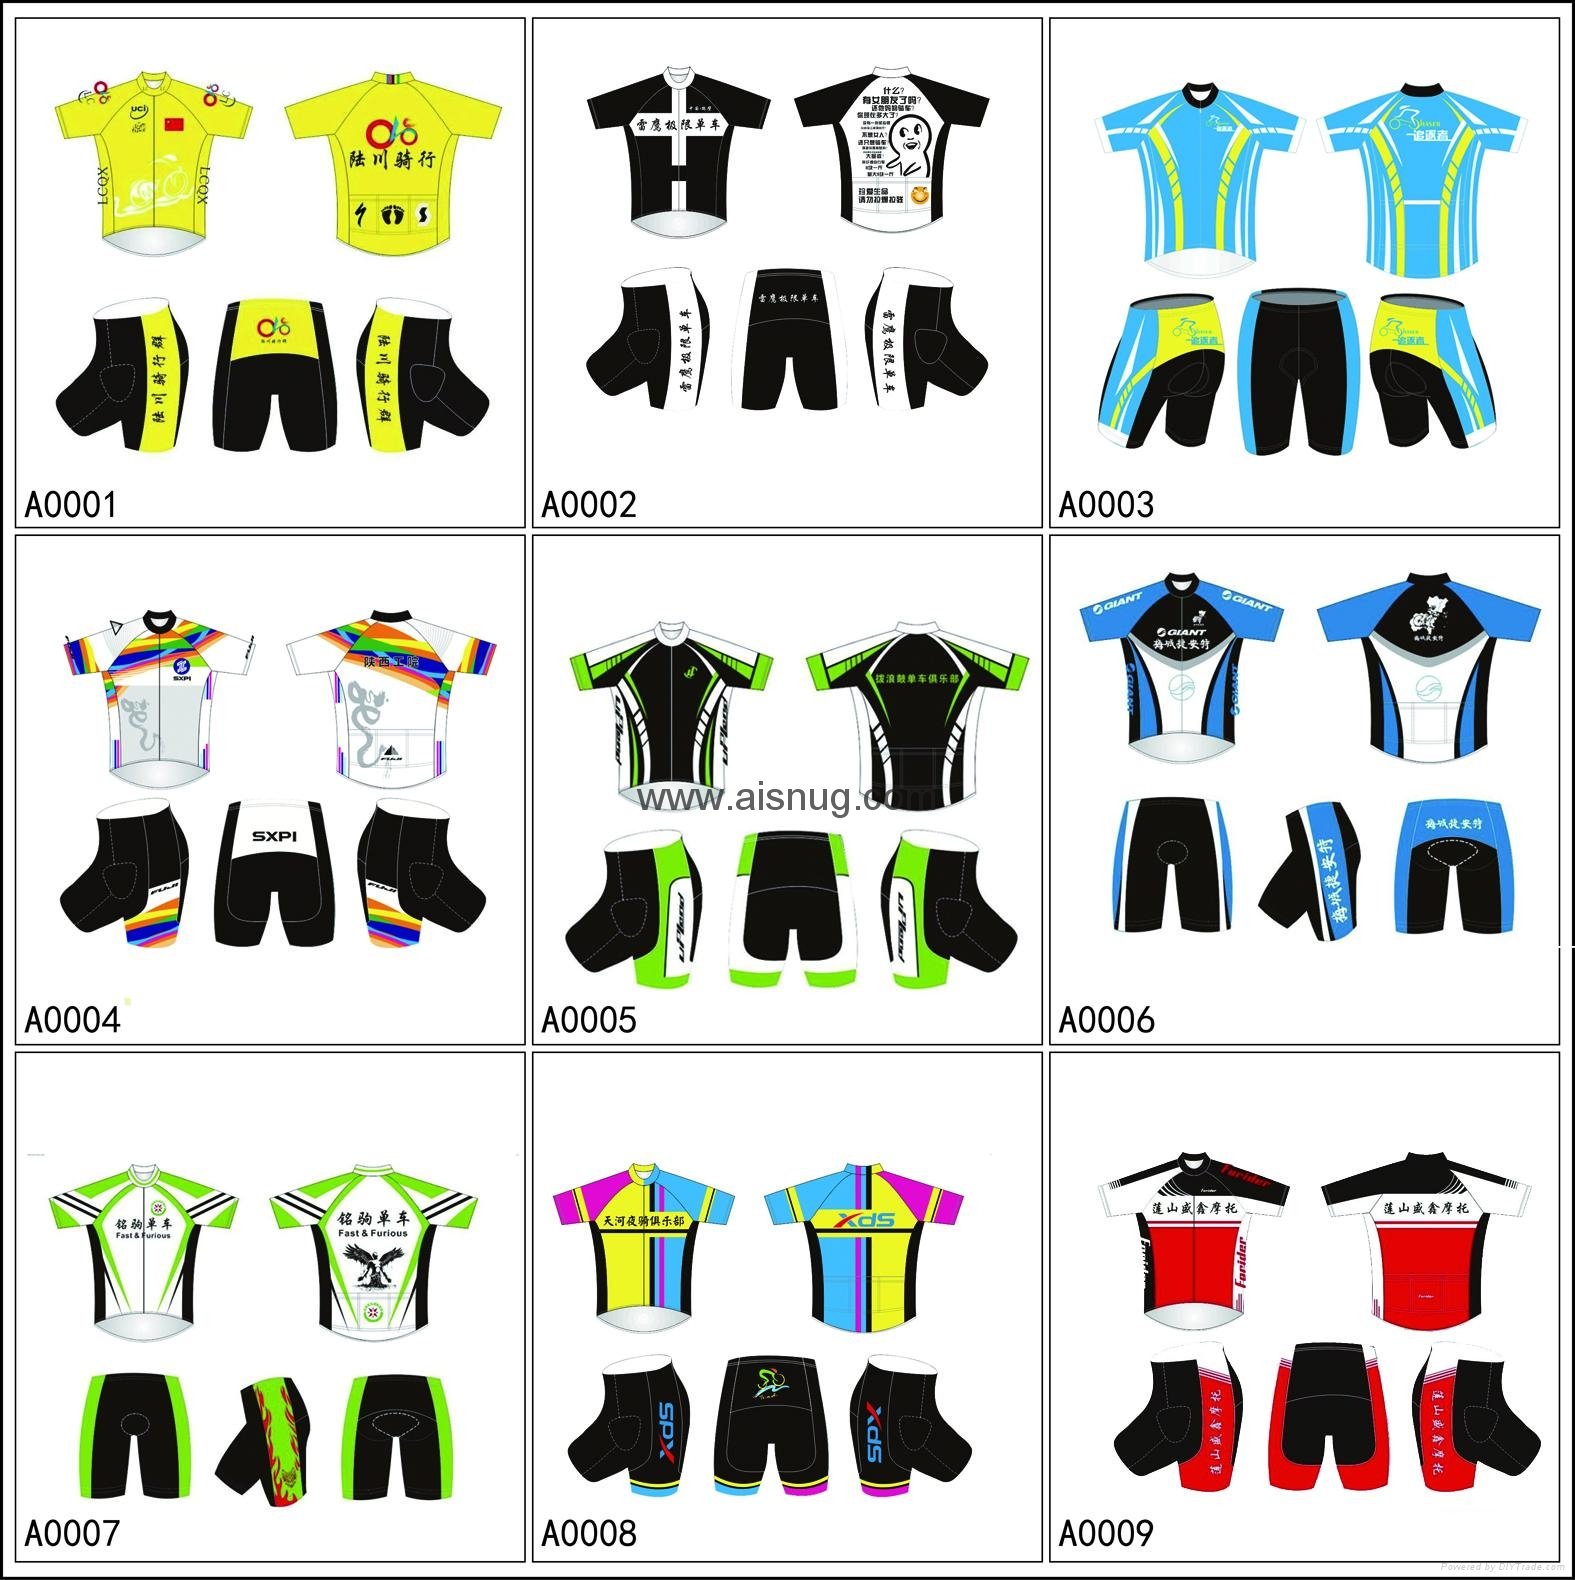 2017 ropa ciclismo  vuelta a espana cycling jersey 5